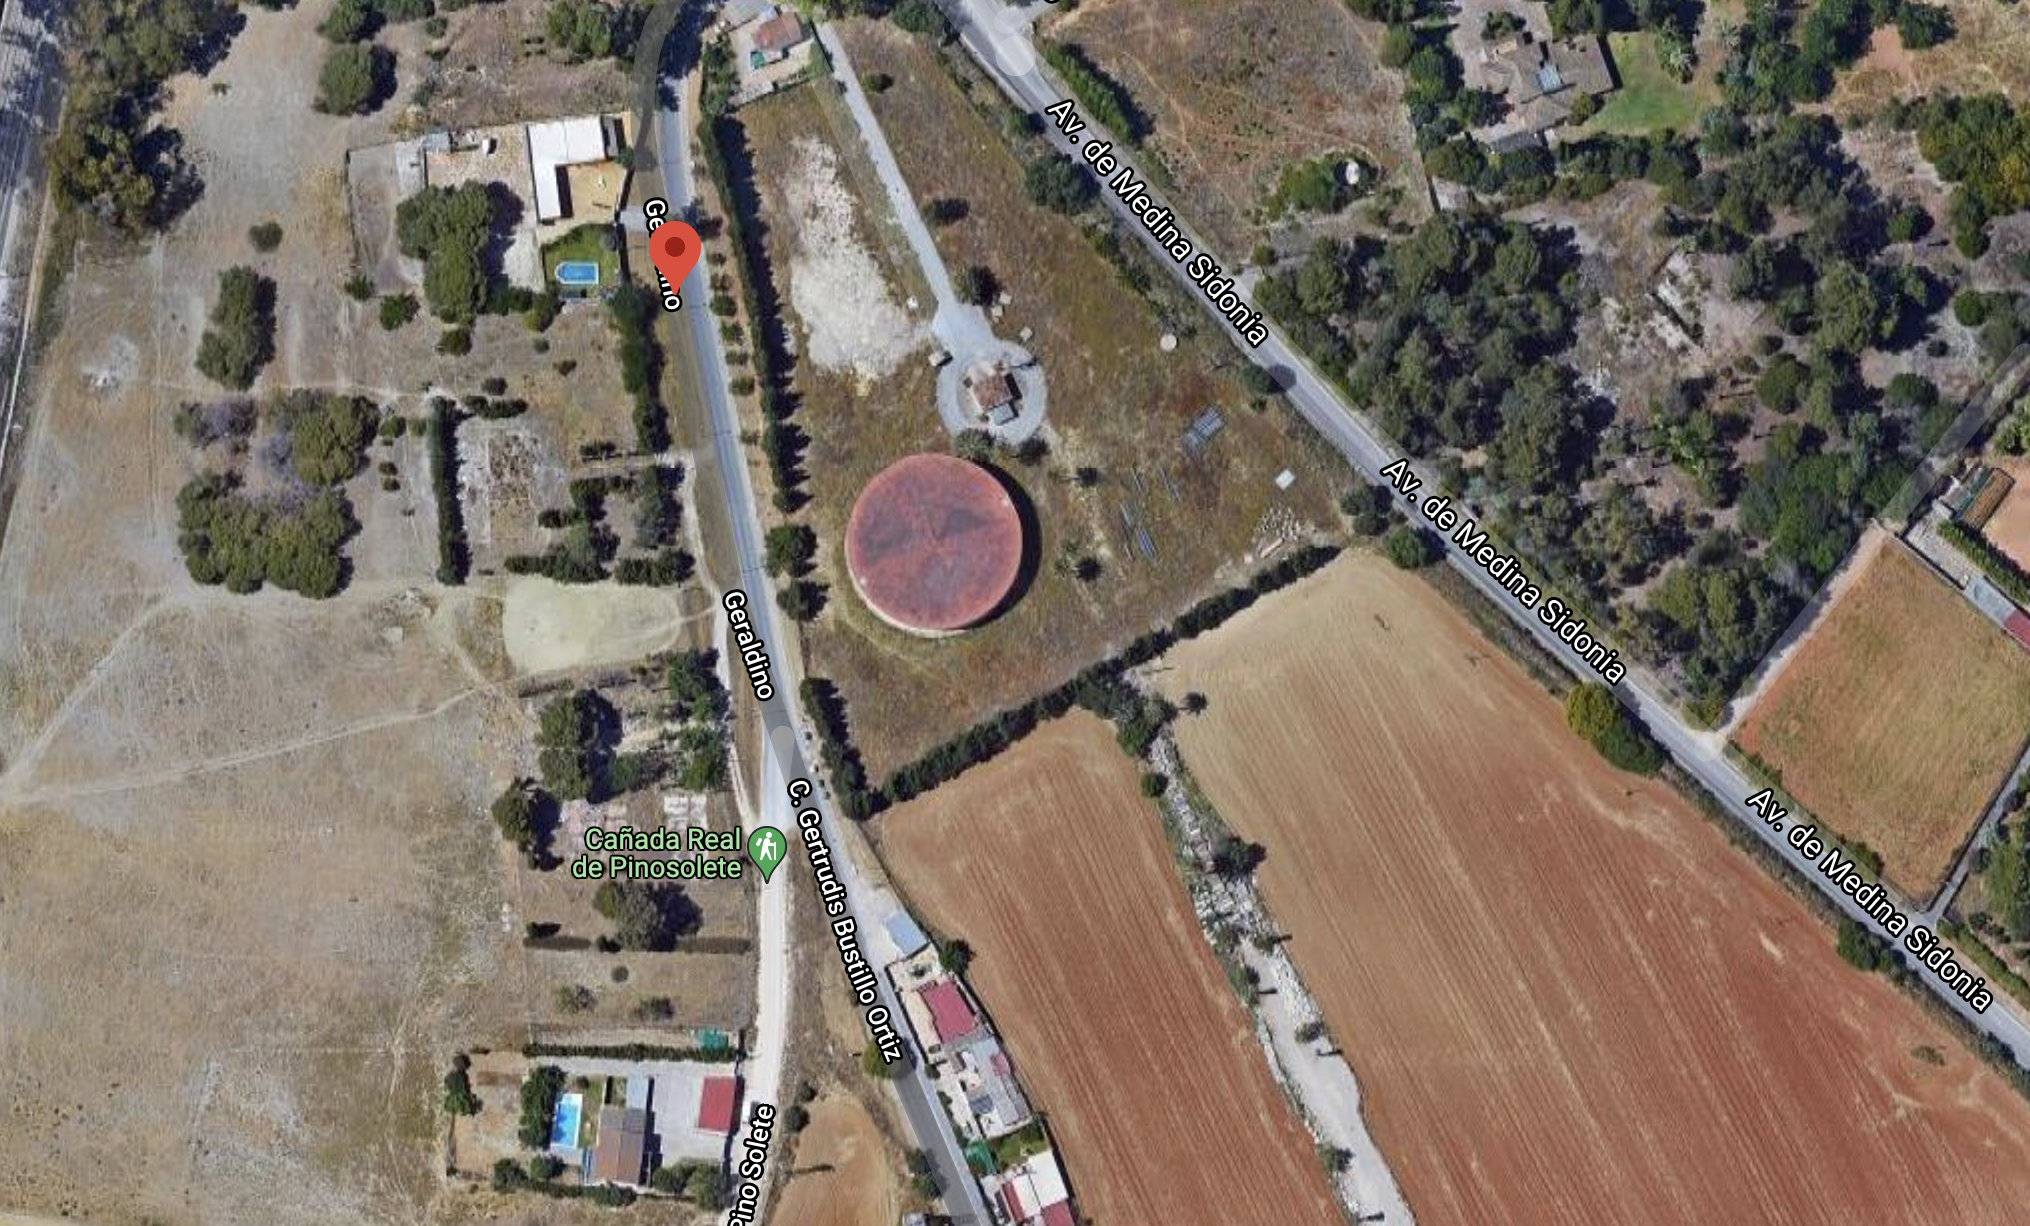 Zona de Geraldino, Cartuja y Pago Solete, que contará con Plan Parcial de Suelo Urbanizable Sectorizado para desarrollar esta zona de Jerez, en una imagen de Google Maps.